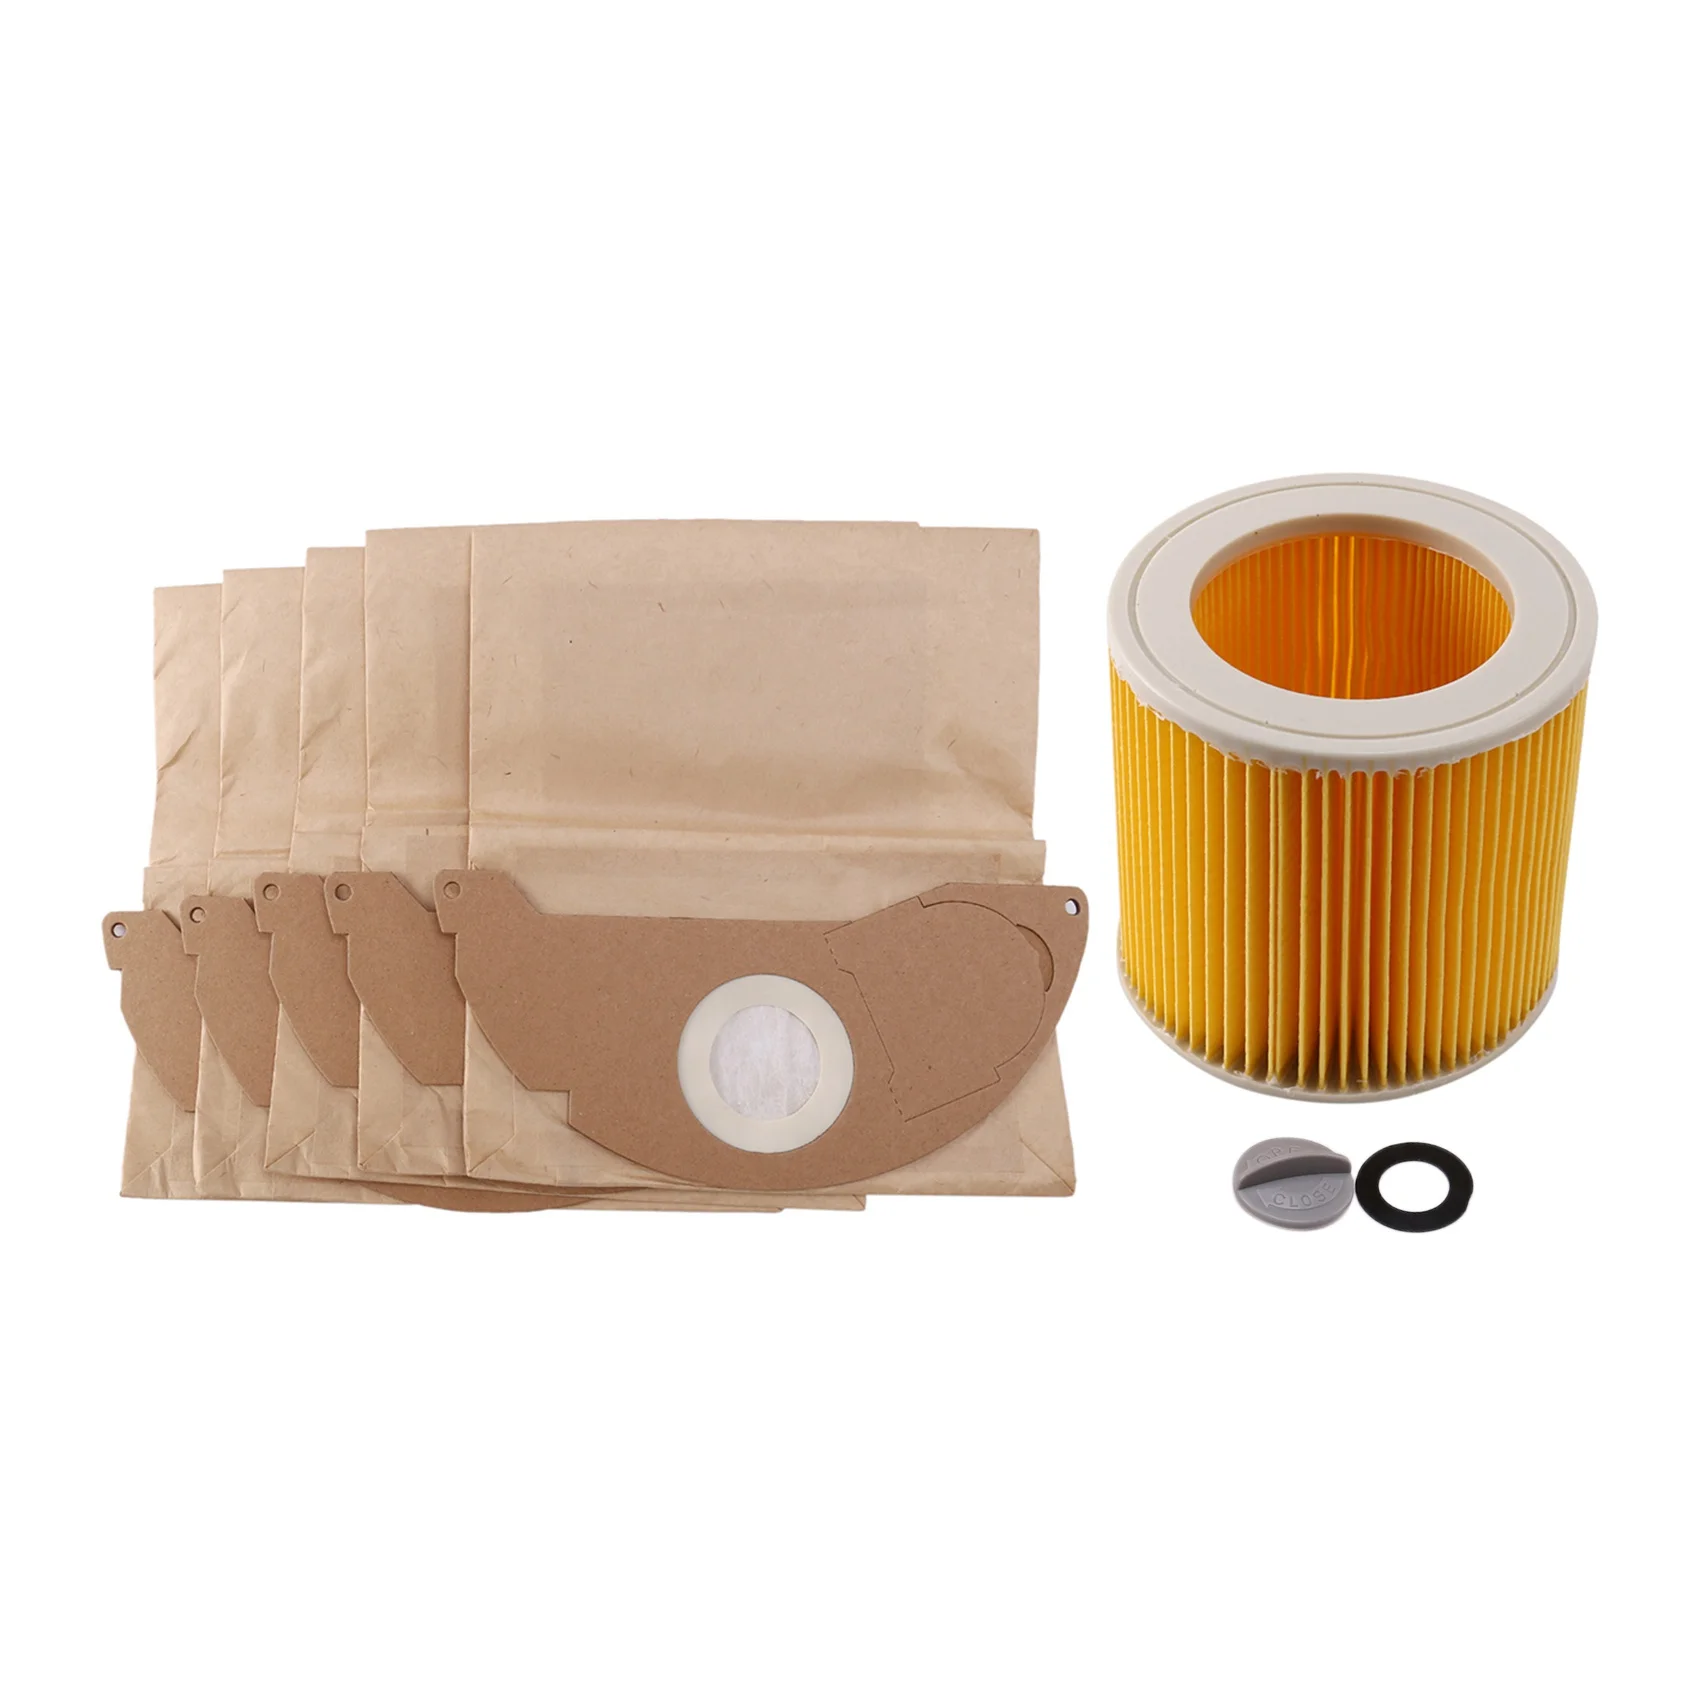 

1 шт. фильтры Hepa + 5 шт. бумажных пакетов для пылесосов Karcher, запчасти, картридж, Hepa фильтр Wd2250 Wd3.200 Mv2 Mv3 Wd3